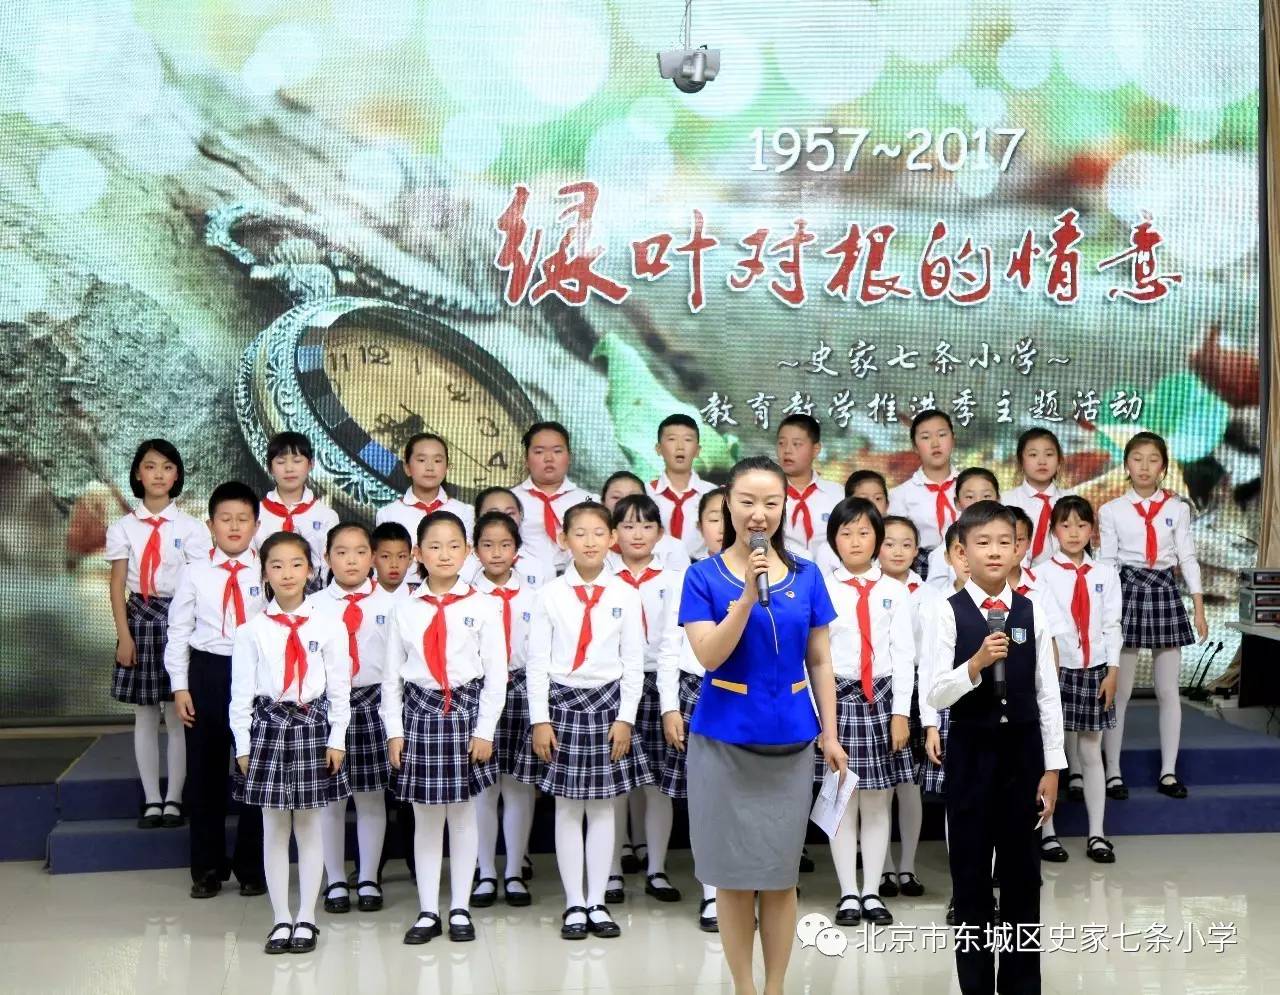 2017年5月27日上午,北京市东城区史家七条小学的礼堂里《绿叶对根的情